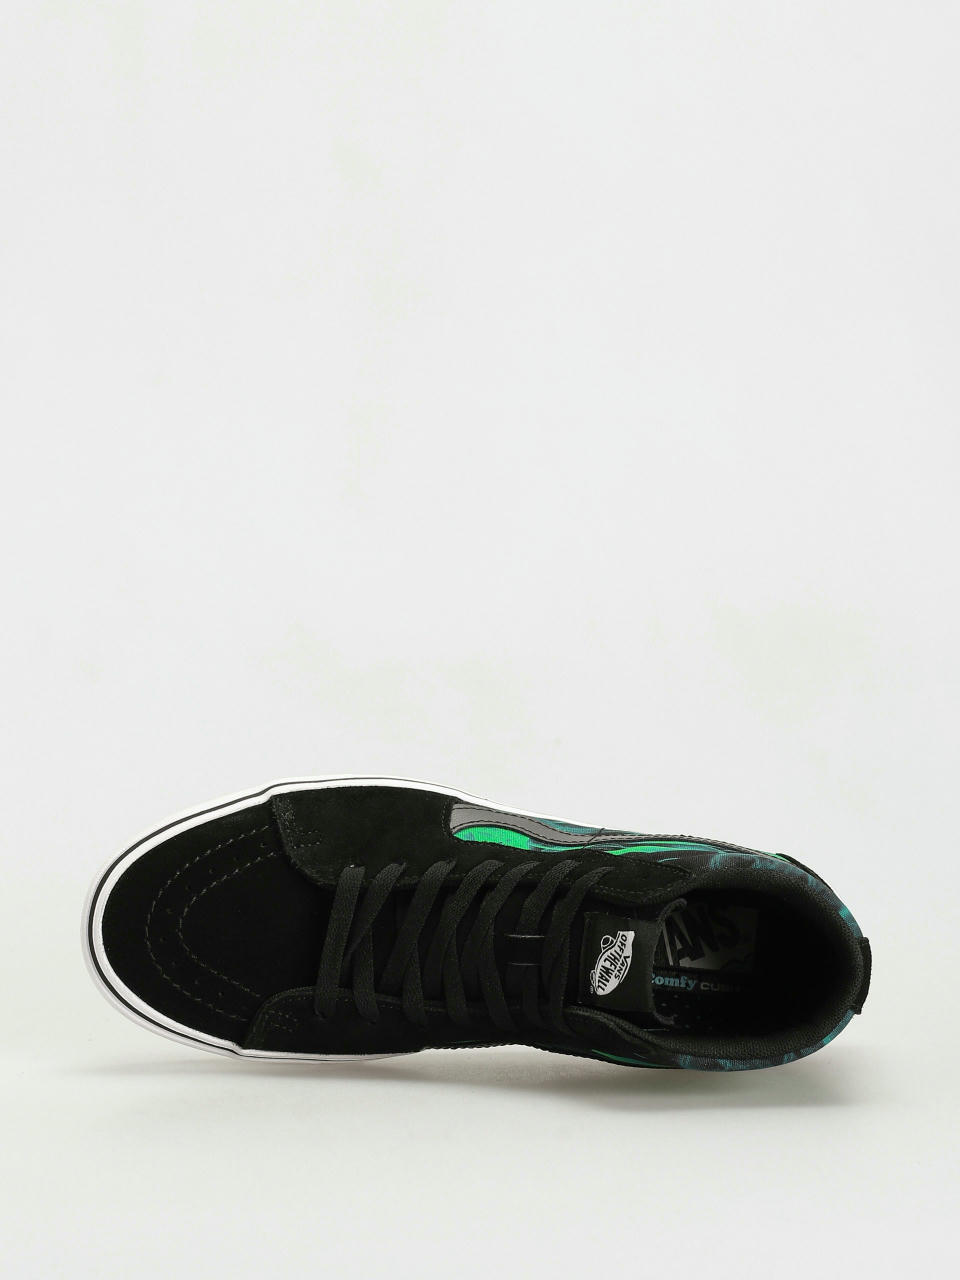 VANS Sk8-Hi After Dark ComfyCush Men's Black Green Canvas Sneakers  VN0A7TNOYJ7